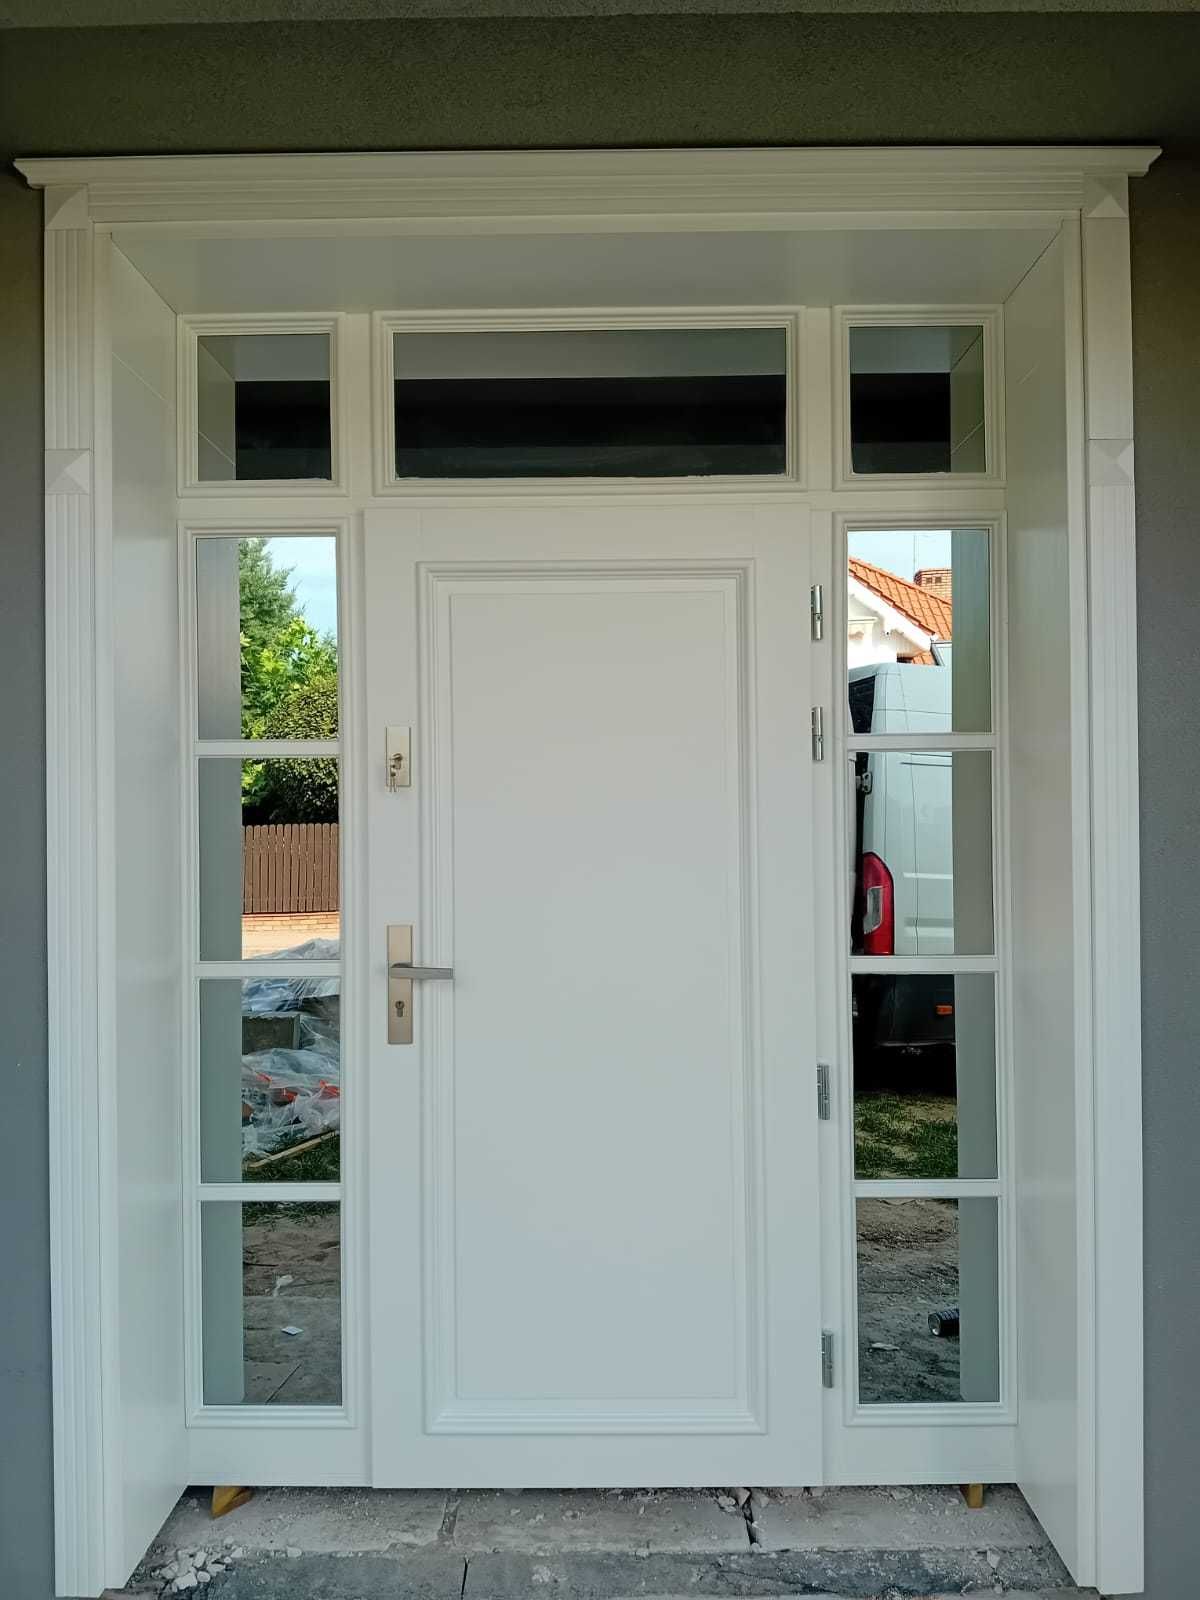 Drzwi zewnętrzne wejściowe dębowe dostawa GRATIS ( czyste powietrze)